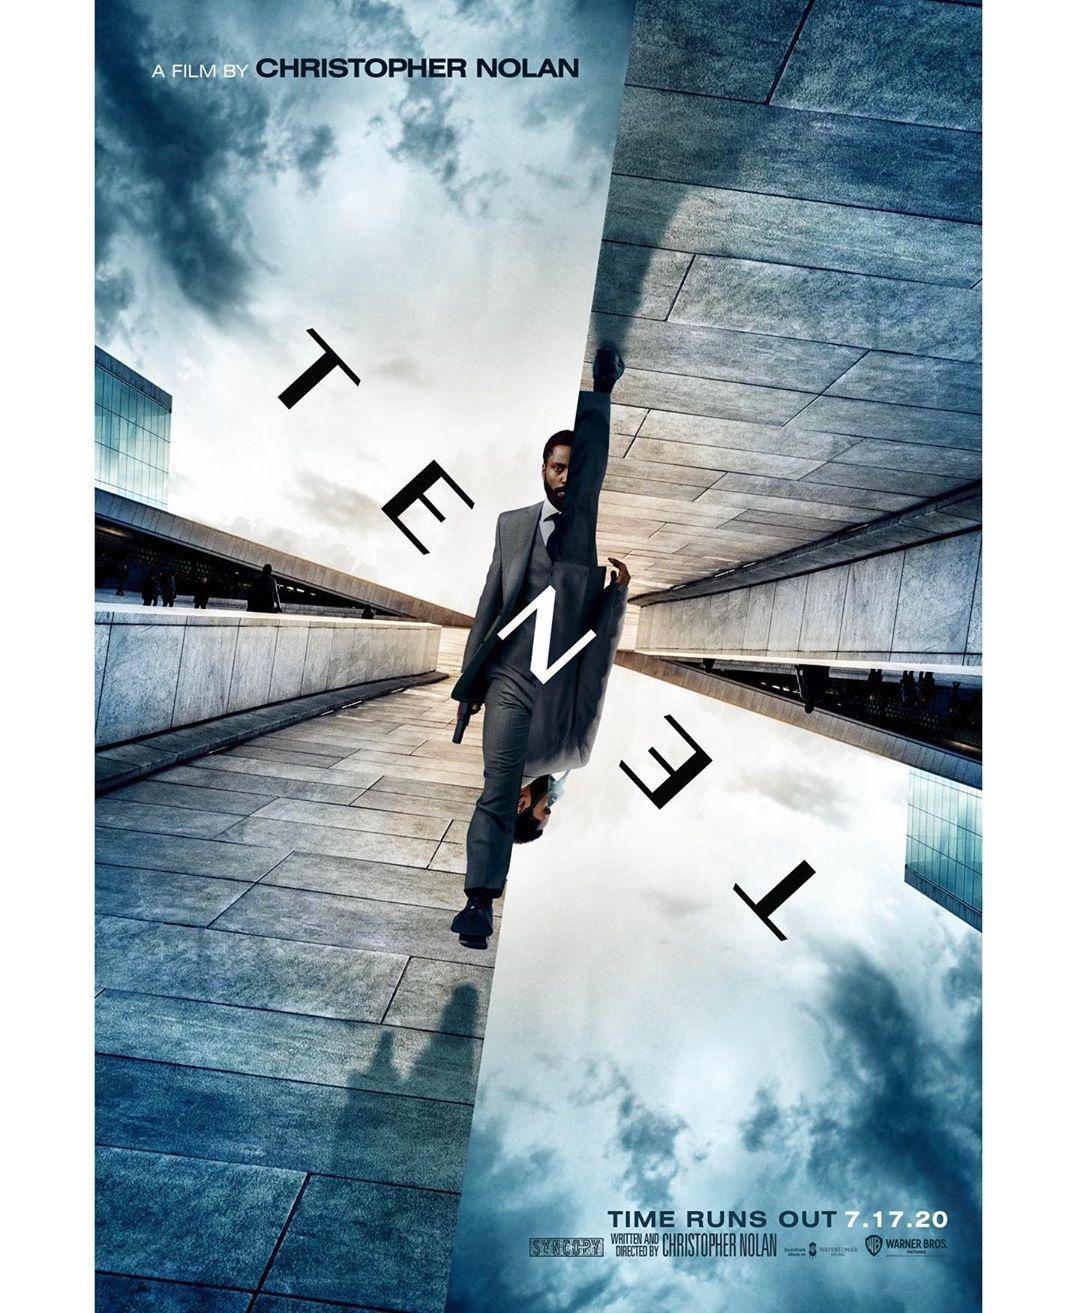 Tenet Release Date: जल्द ही देशभर के सिनेमा हॉल में रिलीज होगी डिपंल कपाड़िया की हॉलीवुड फिल्म टेनेट